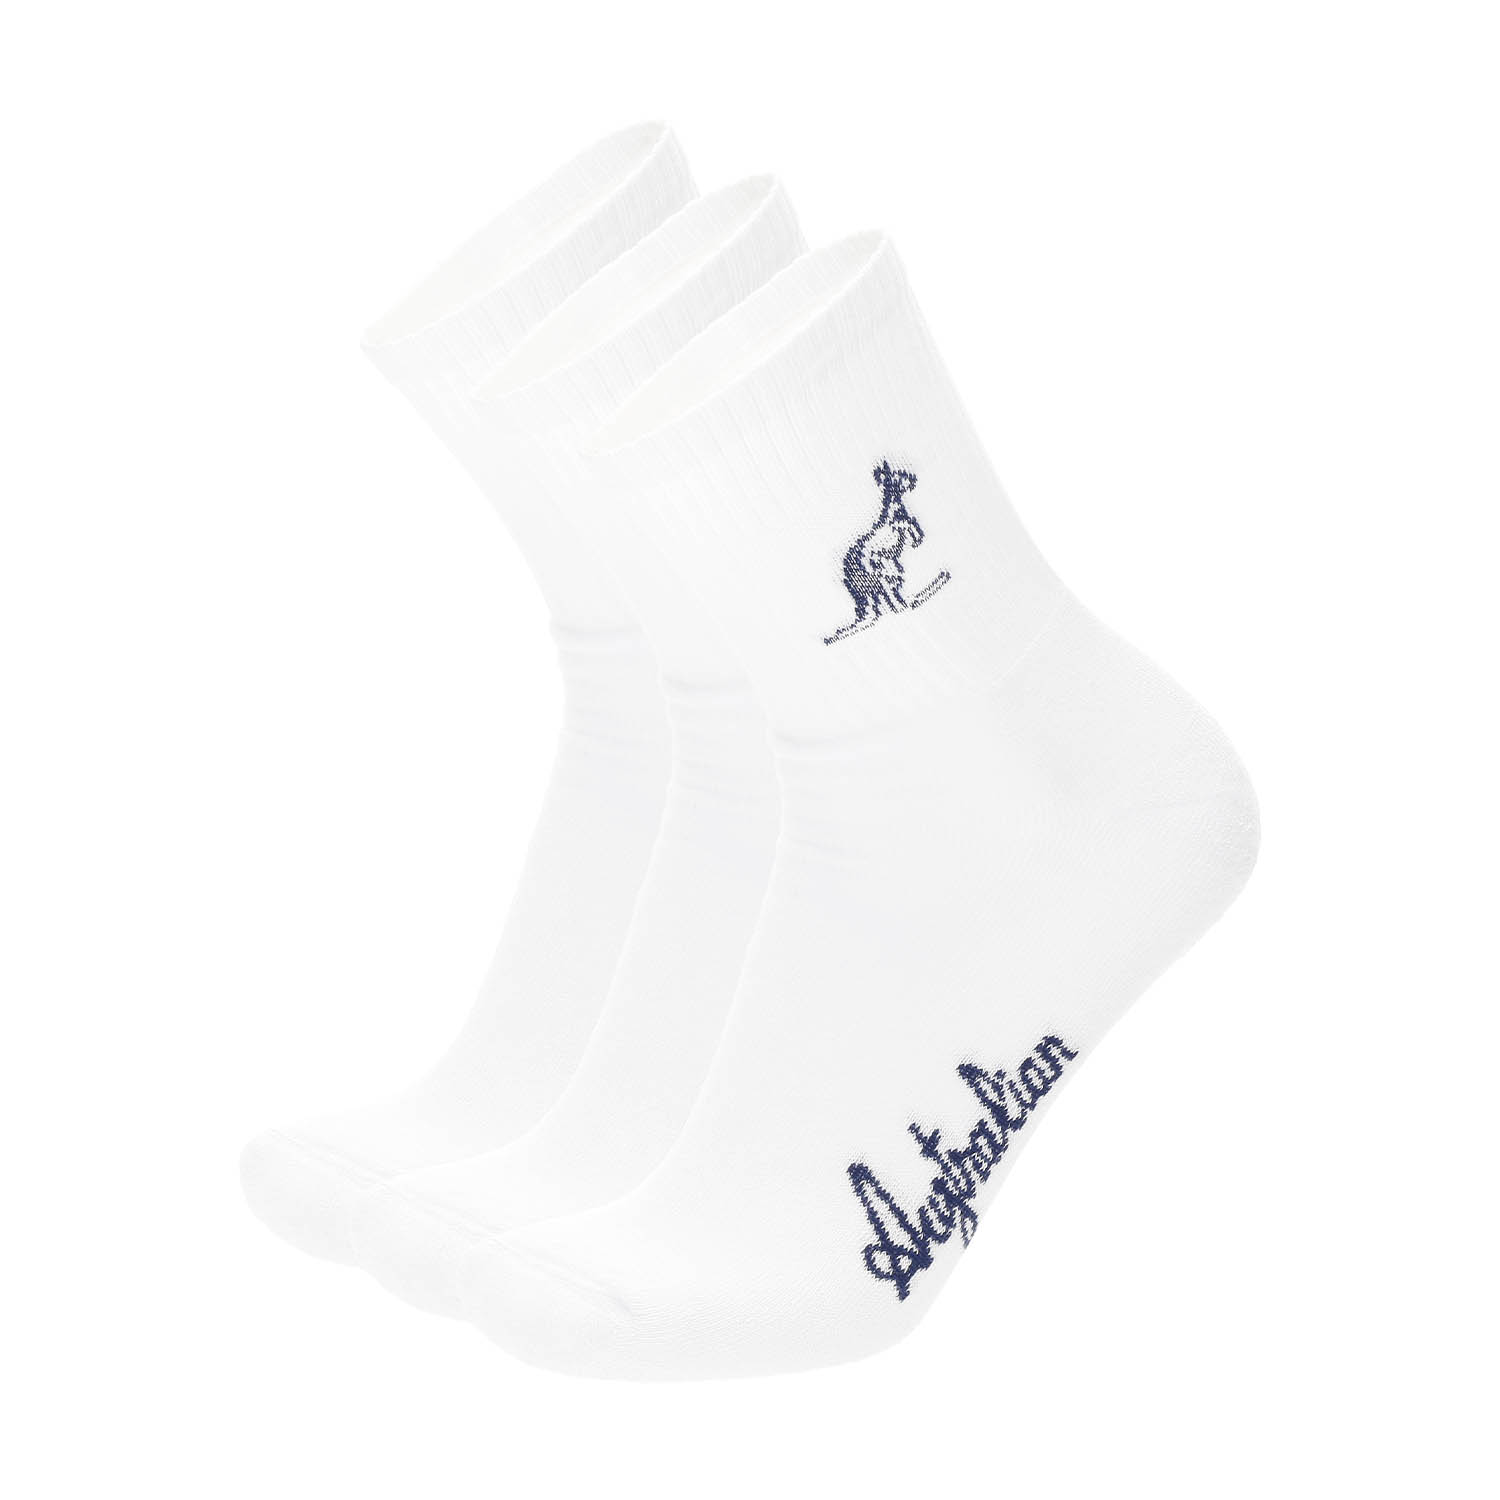 Australian Logo x 3 Socks - White